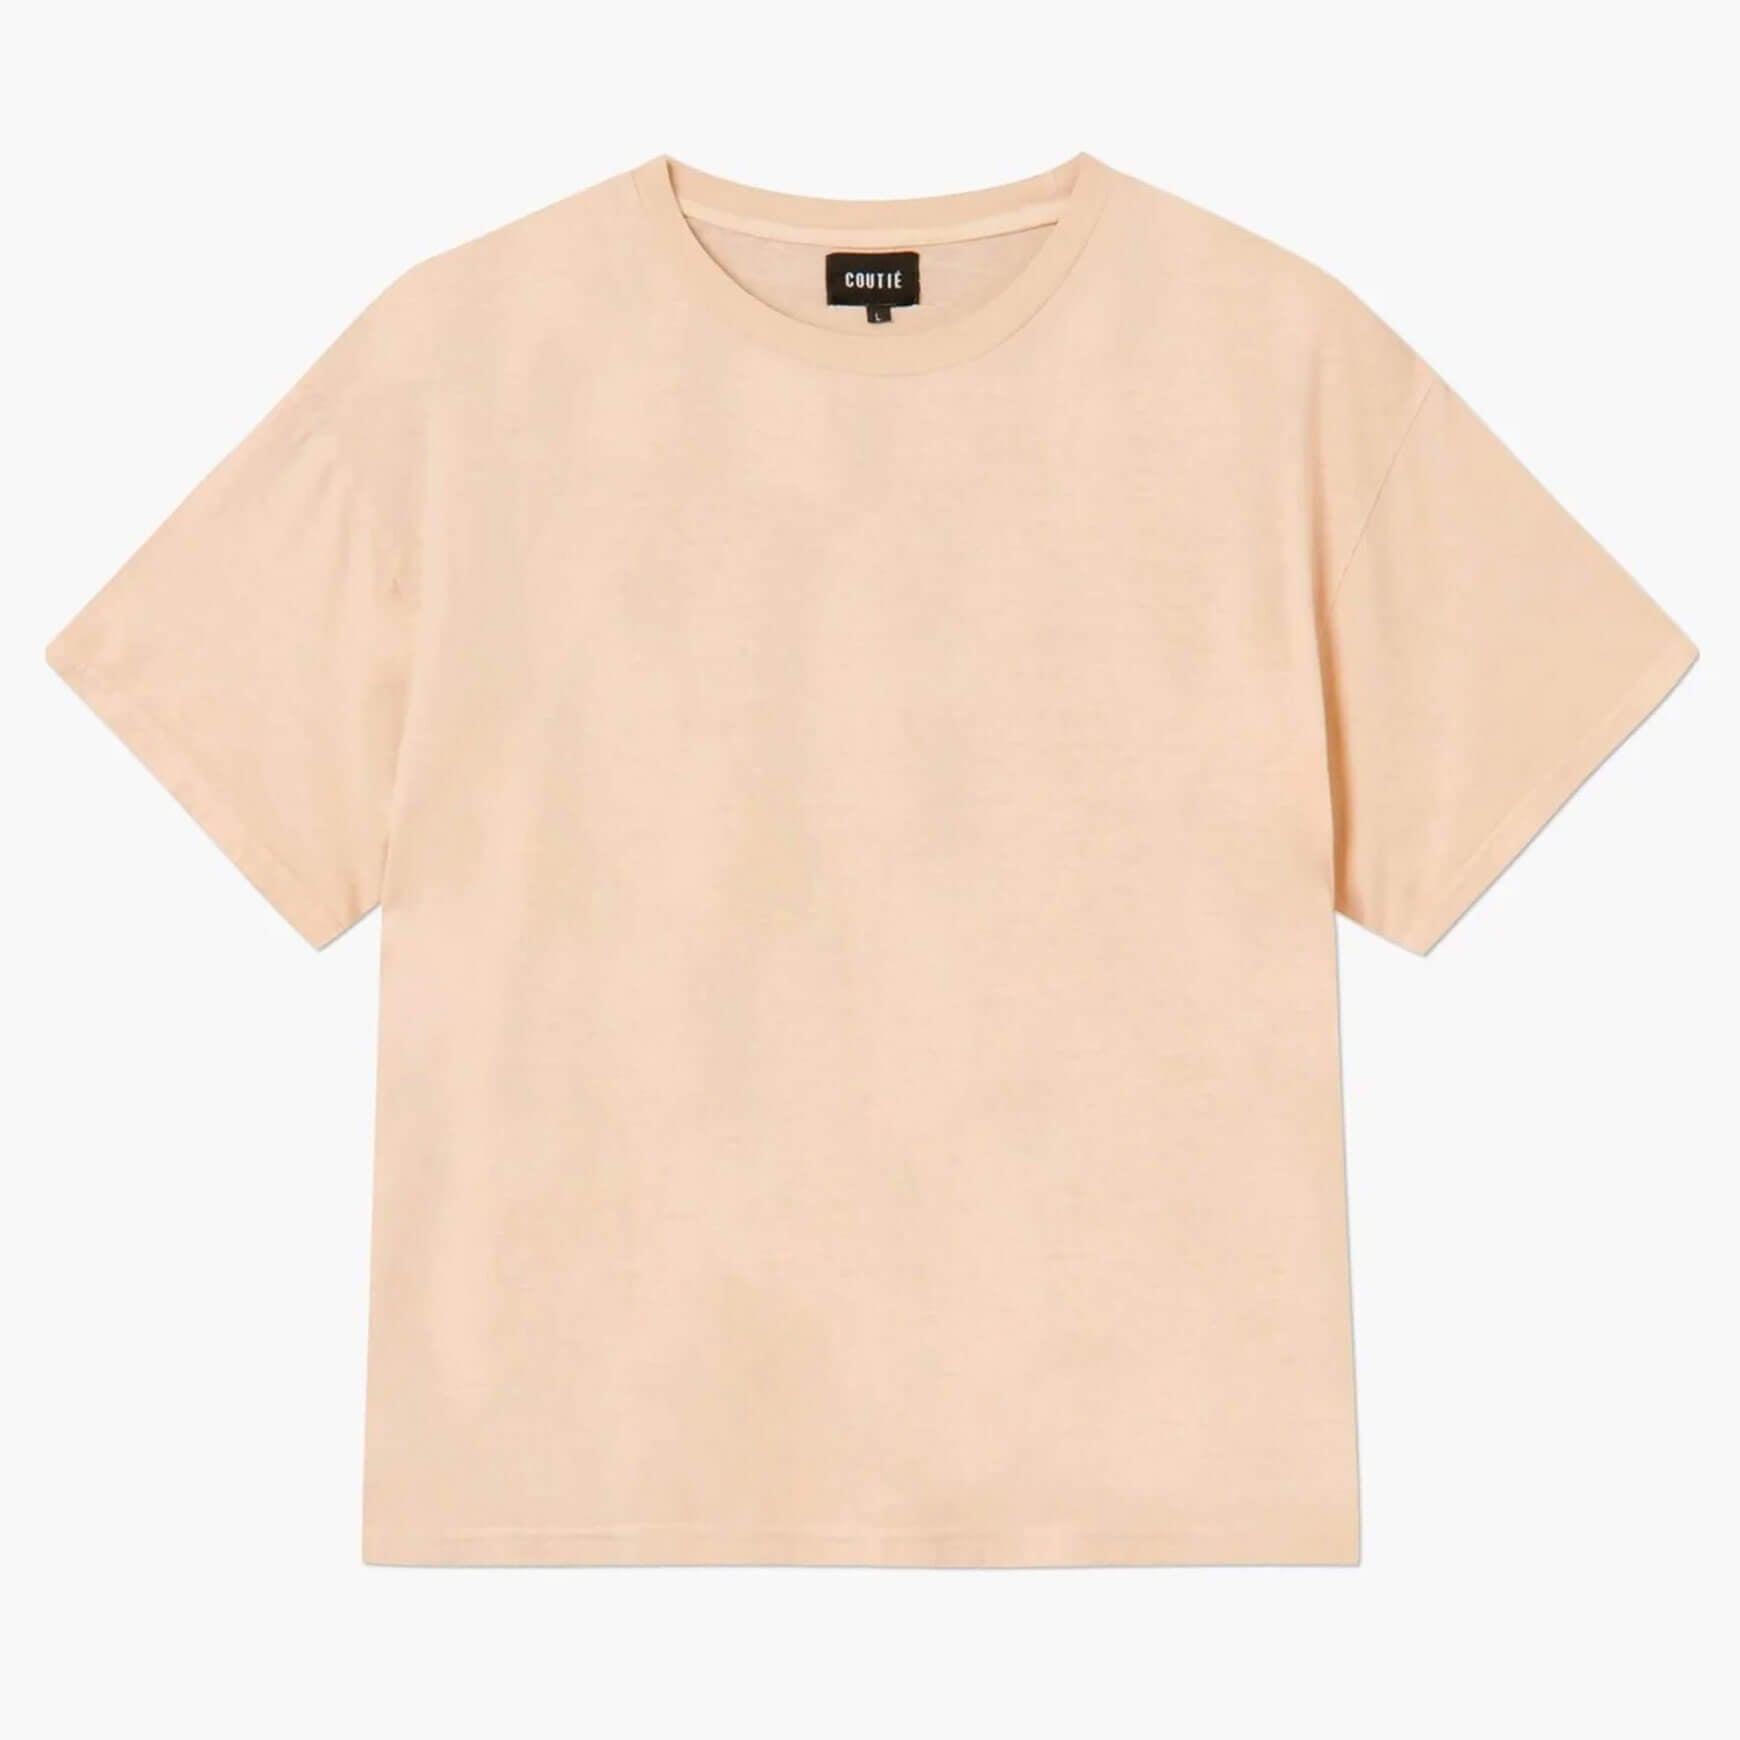 Essential T-Shirt Camel